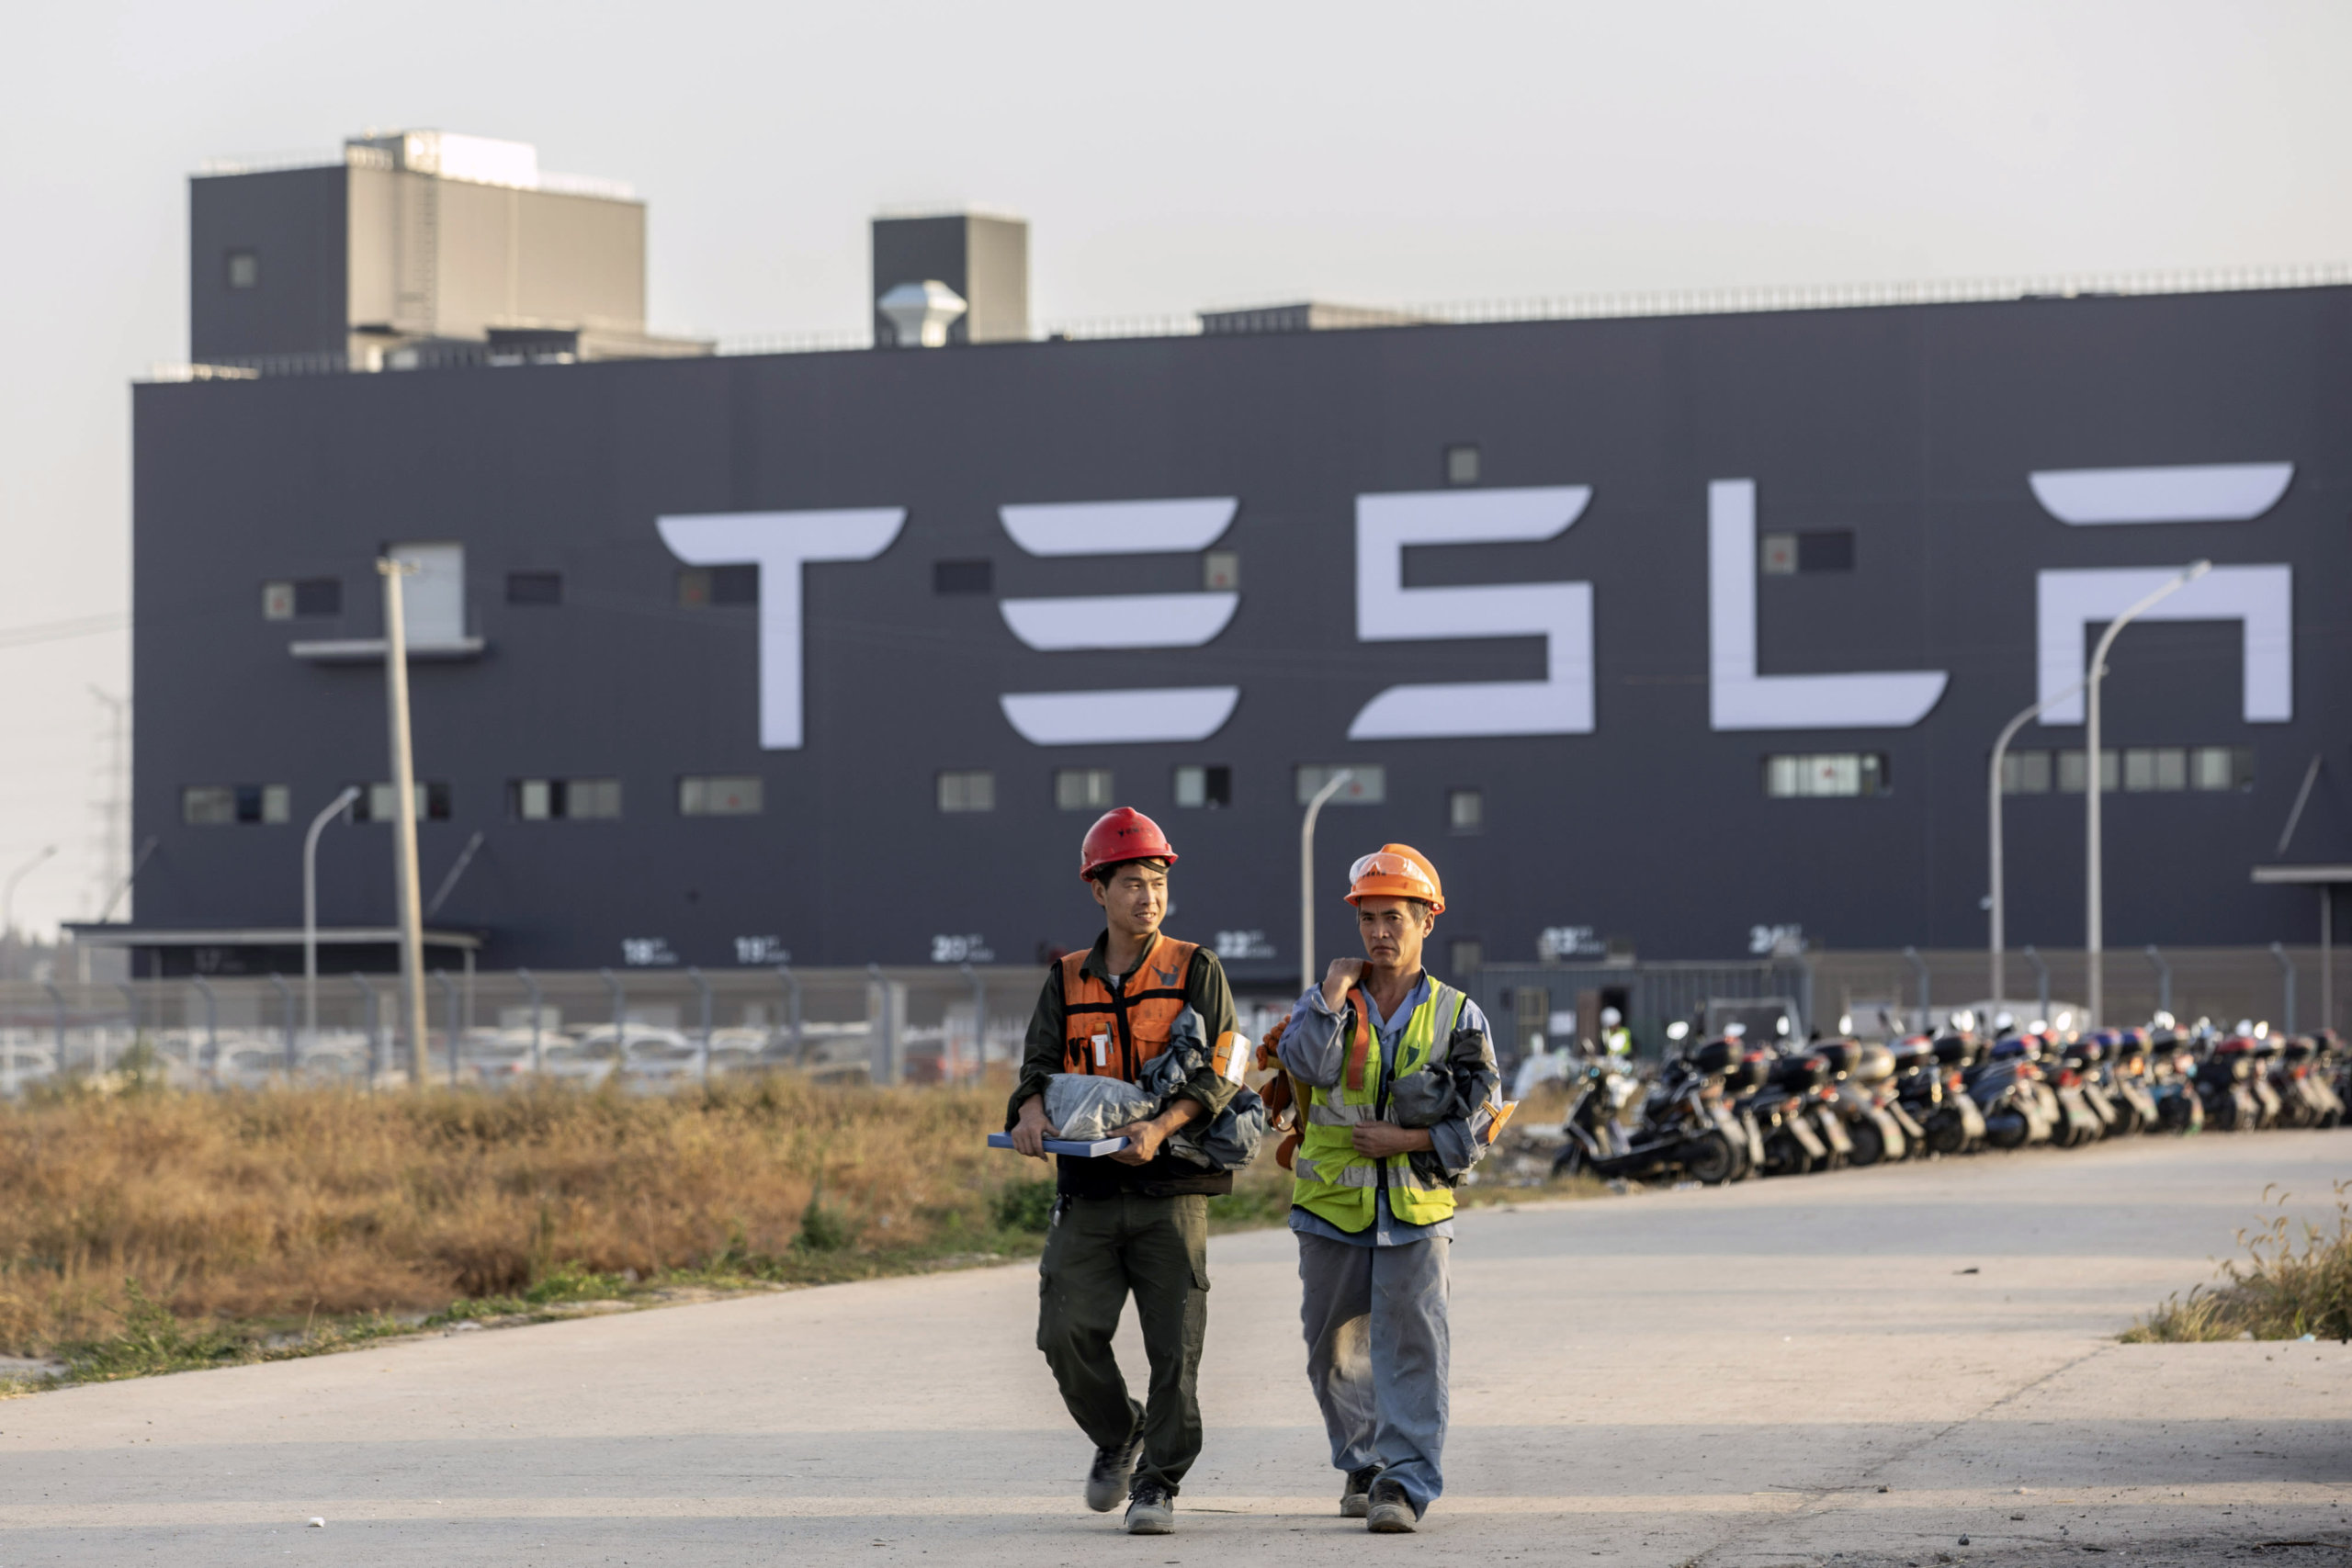 Tesla рассматривает возможность строительства своего следующего завода в Остине или Талсе